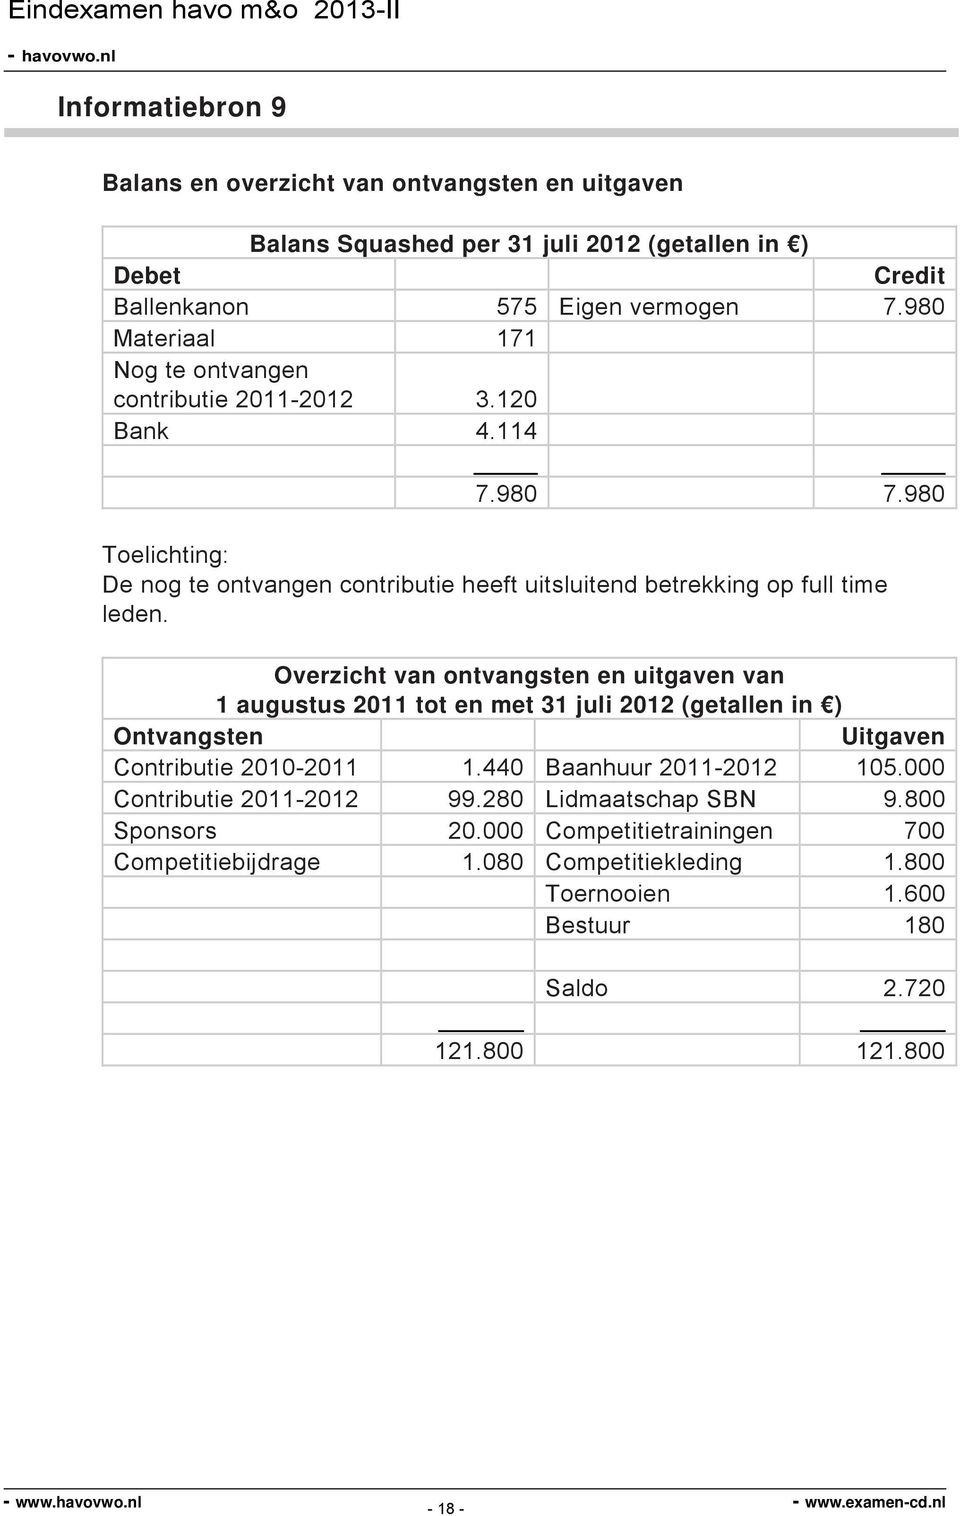 Overzicht van ontvangsten en uitgaven van 1 augustus 2011 tot en met 31 juli 2012 (getallen in ) Ontvangsten Uitgaven Contributie 2010-2011 1.440 Baanhuur 2011-2012 105.